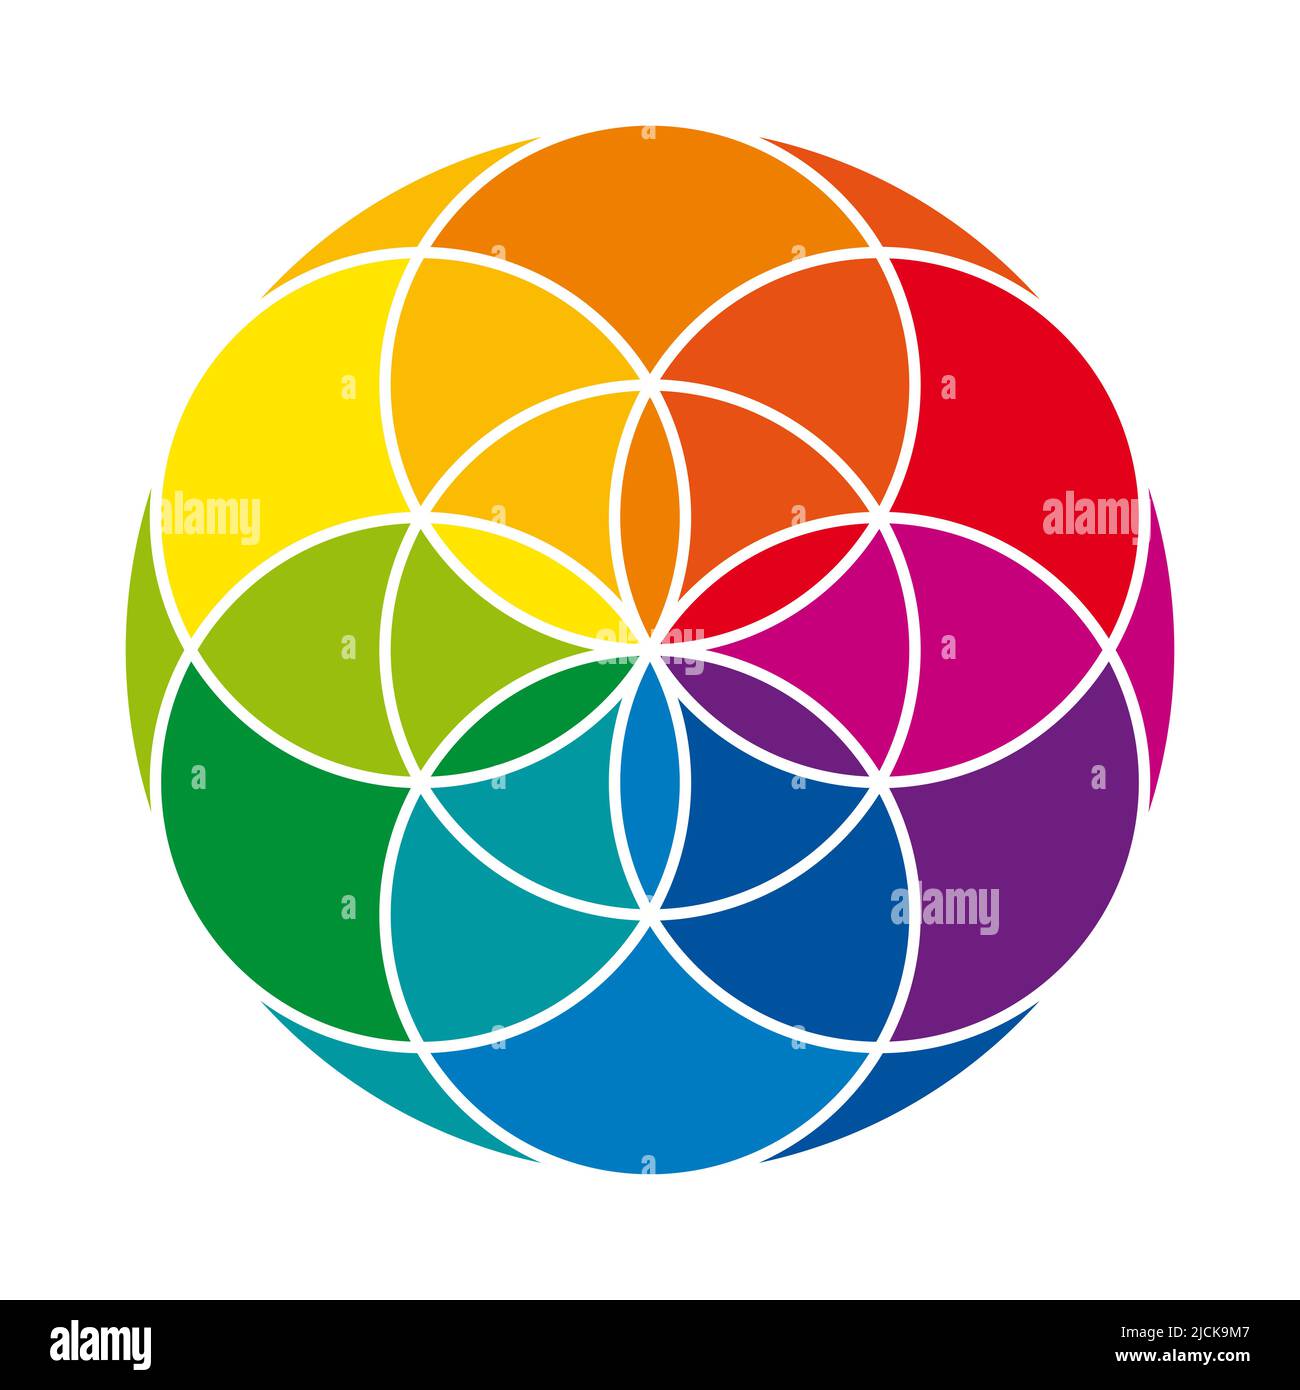 Semilla de Vida de color arco iris con capa protectora, sobre fondo blanco. Figura geométrica, símbolo espiritual y geometría sagrada. Foto de stock